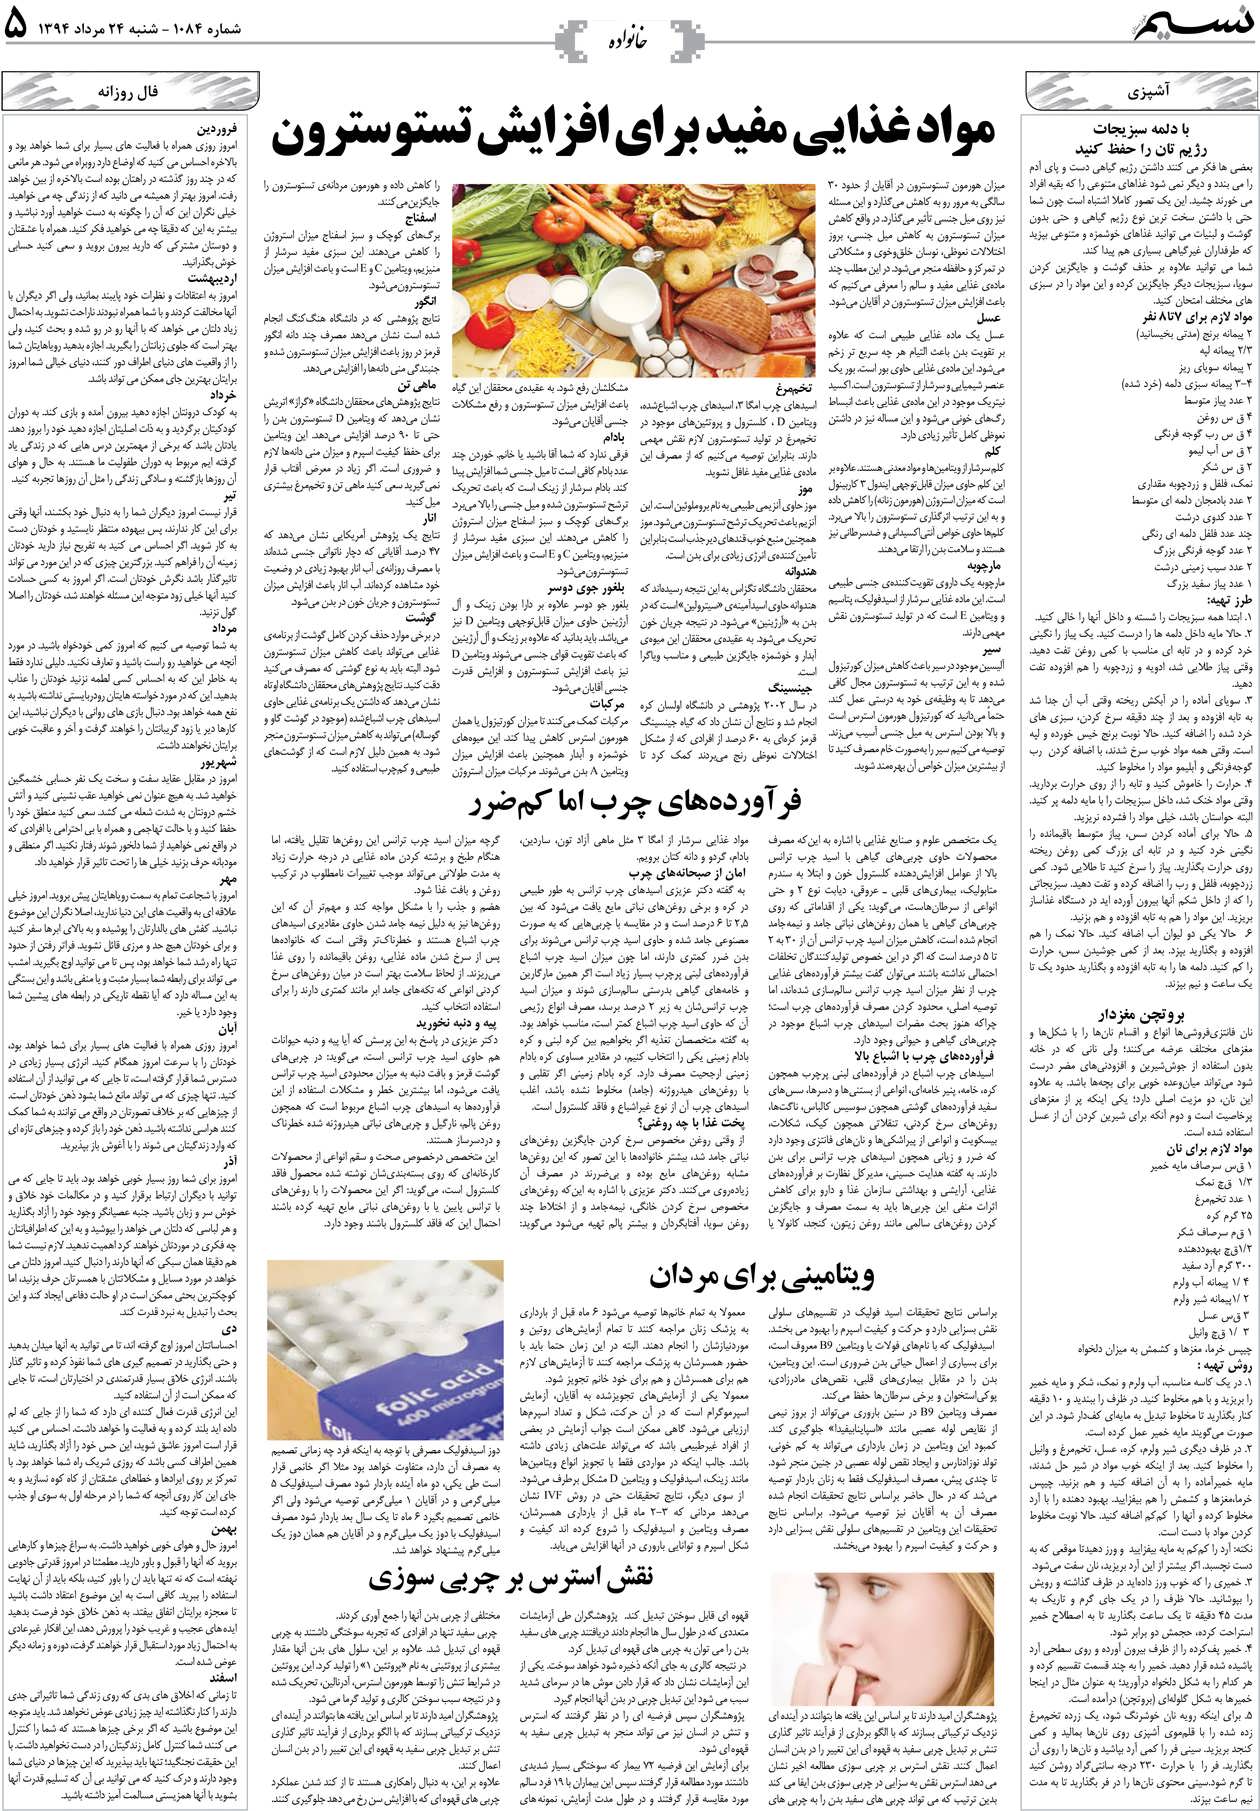 صفحه خانواده روزنامه نسیم شماره 1084